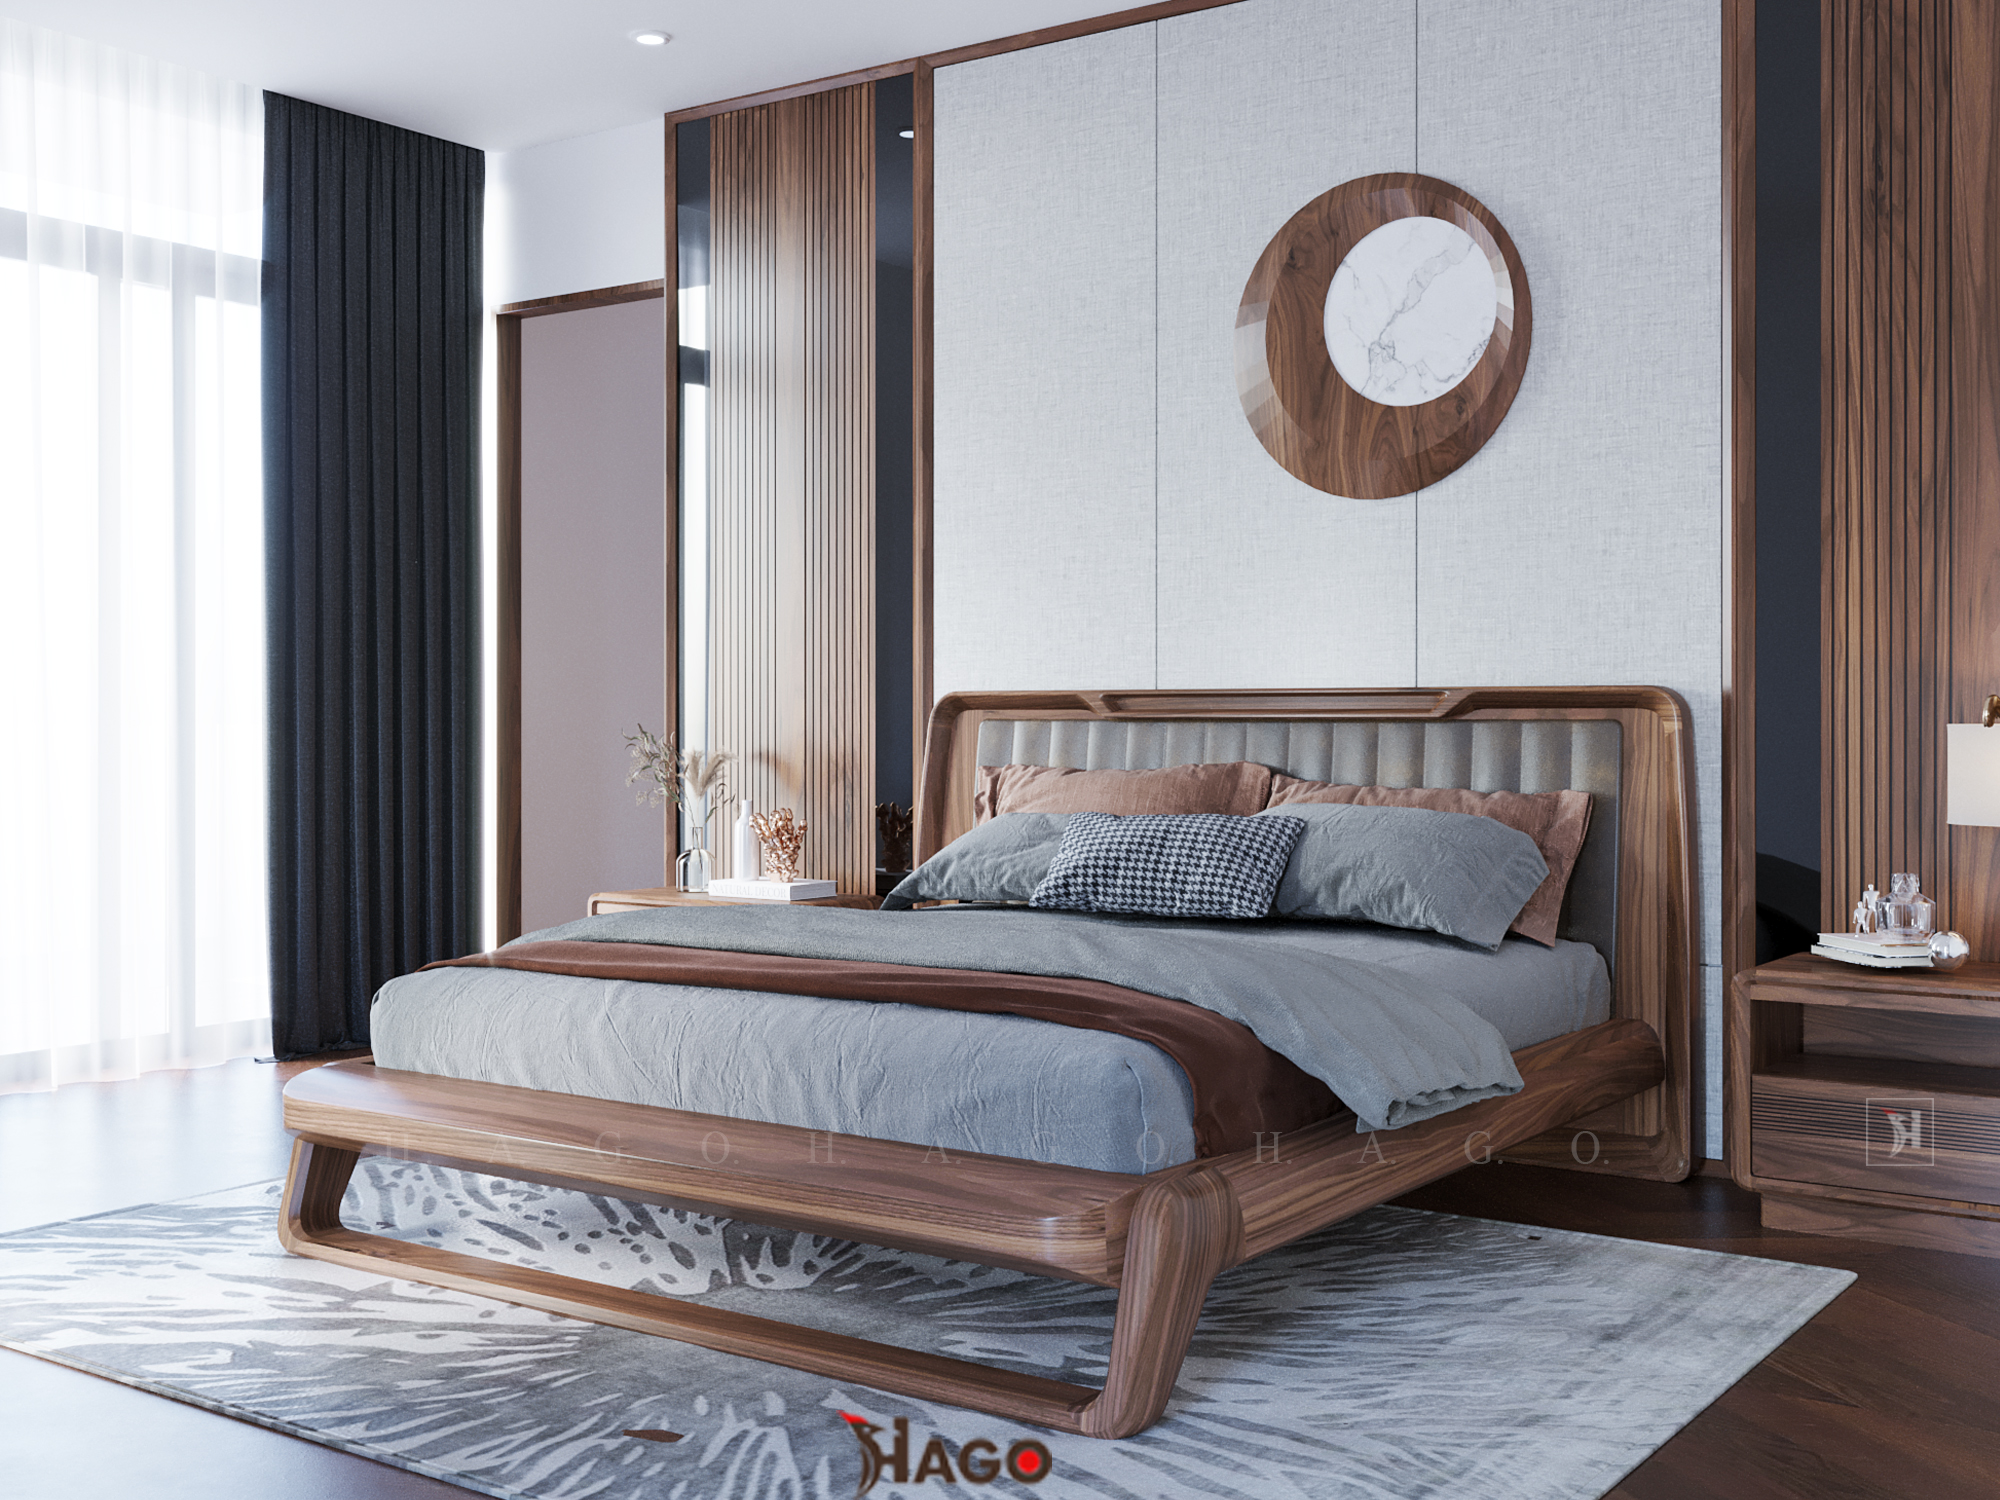 Giường ngủ hiện đại gỗ óc chó: Với thiết kế hiện đại và chất liệu gỗ óc chó đẹp mắt, giường ngủ này chắc chắn sẽ mang lại cho bạn giấc ngủ ngon hơn. Đồng thời, giường còn làm điểm nhấn hoàn hảo cho căn phòng của bạn. Những ai yêu thích phong cách hiện đại và tự nhiên chắc chắn sẽ không thể bỏ qua sản phẩm tuyệt vời này.